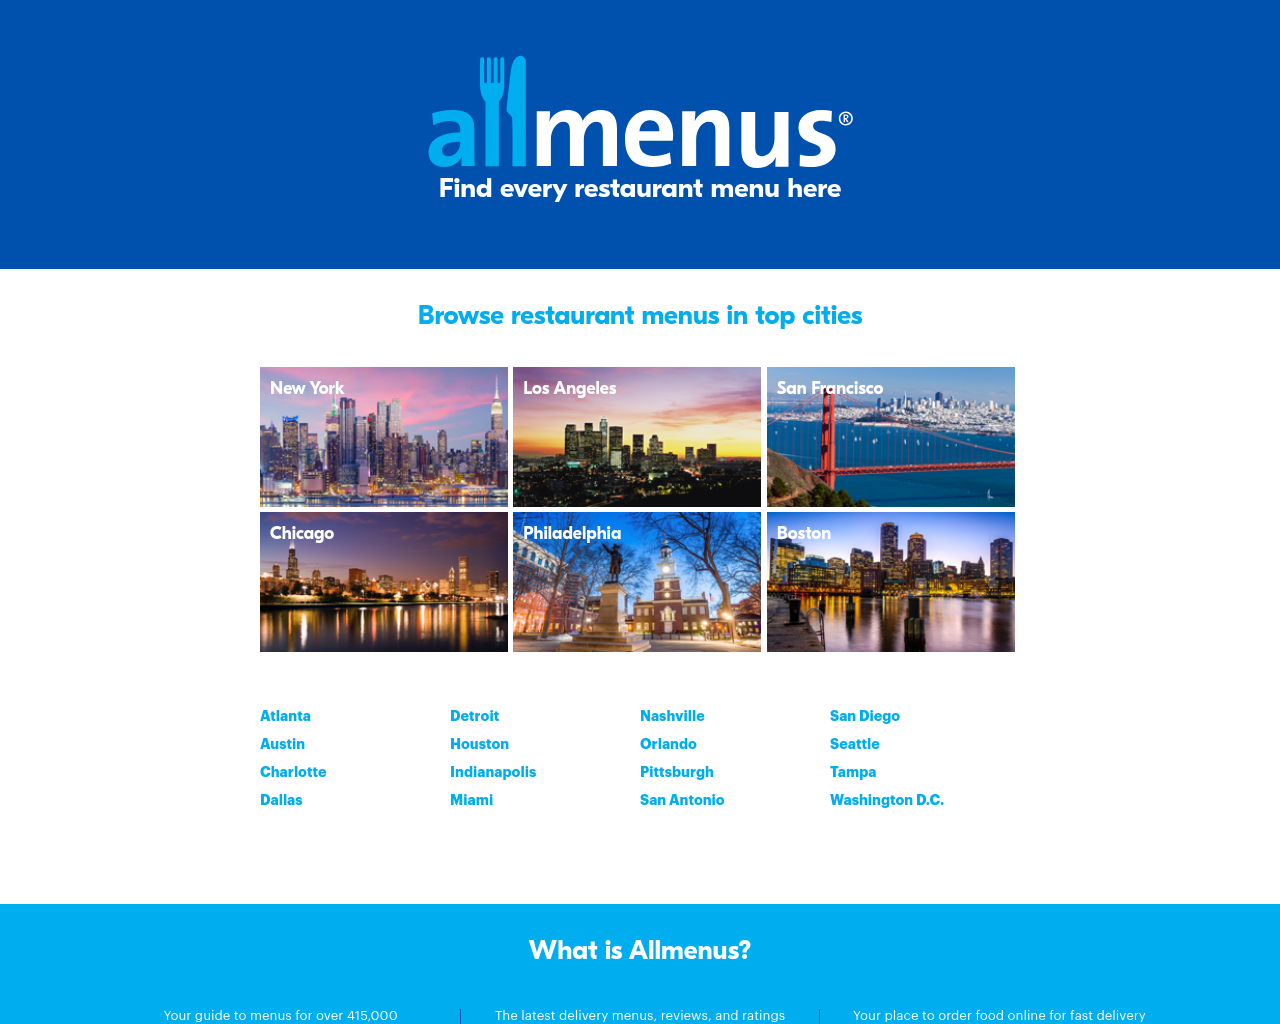 allmenus.com